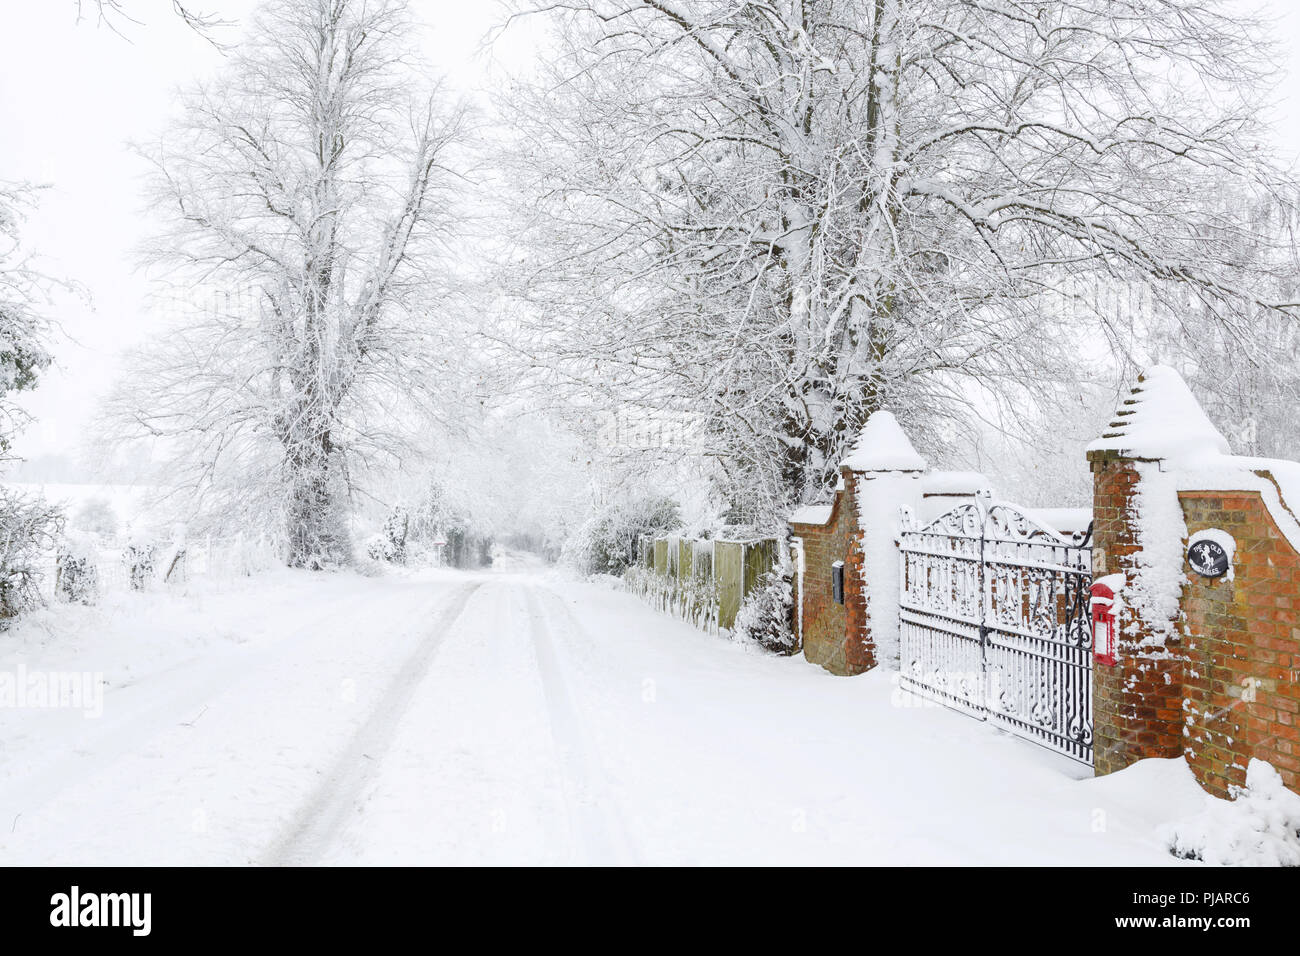 Coperte di neve strada britannica fuori dall'ingresso di una vecchia casa circondata dalla campagna in inverno Foto Stock